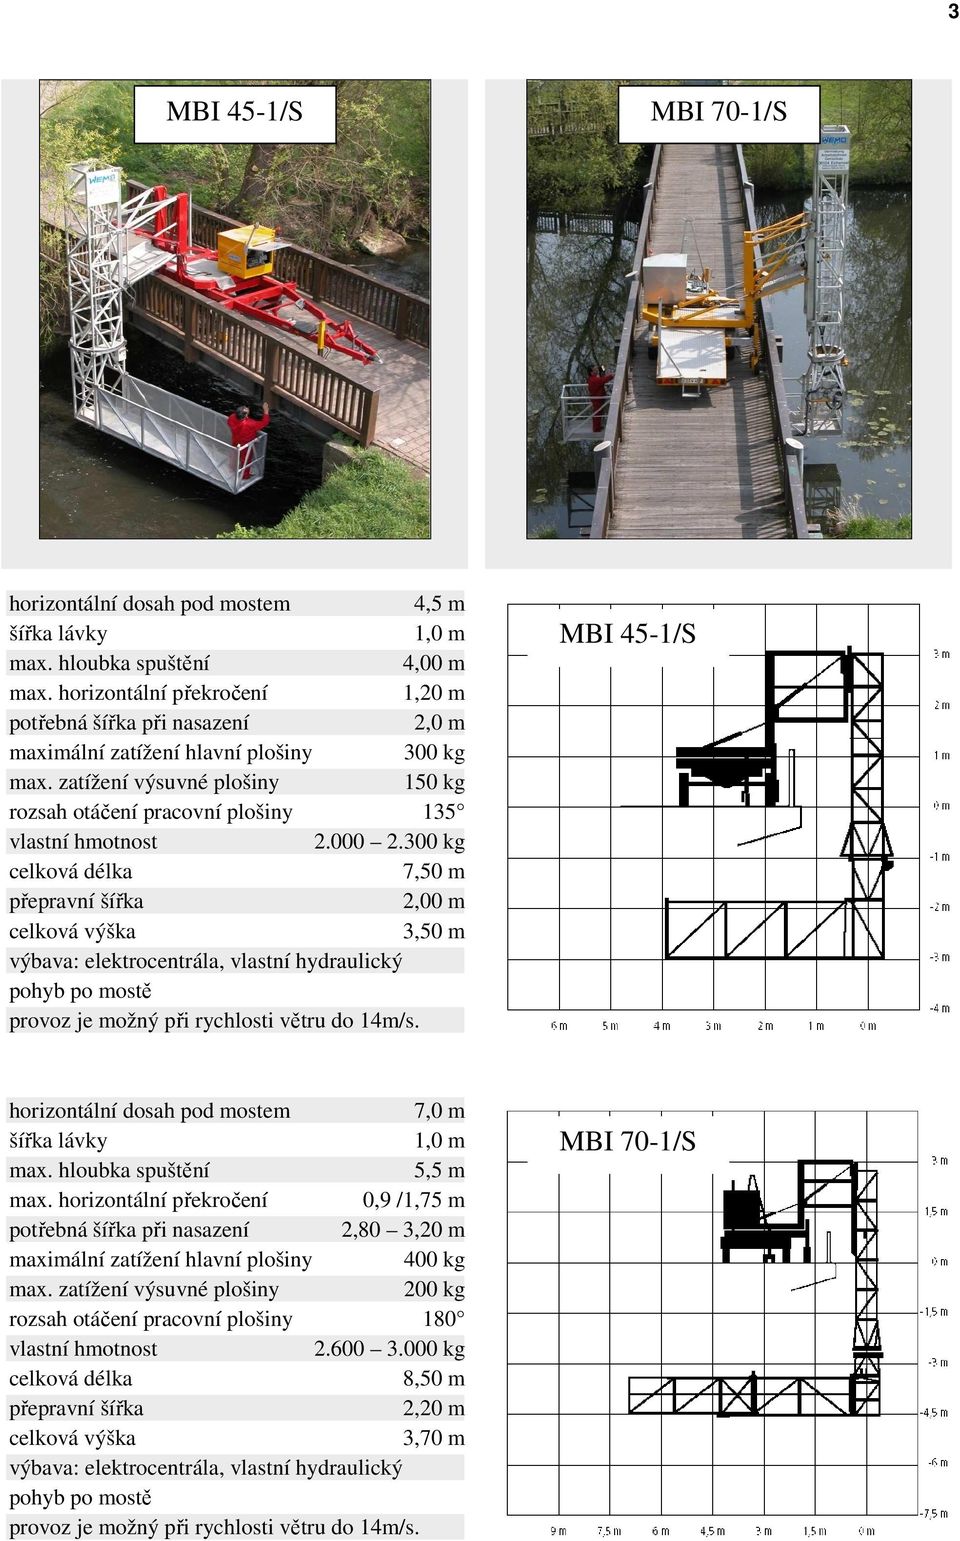 300 kg 7,50 m 2,00 m 3,50 m výbava: elektrocentrála, vlastní hydraulický pohyb po mostě MBI 45-1/S horizontální dosah pod mostem 7,0 m 1,0 m 5,5 m